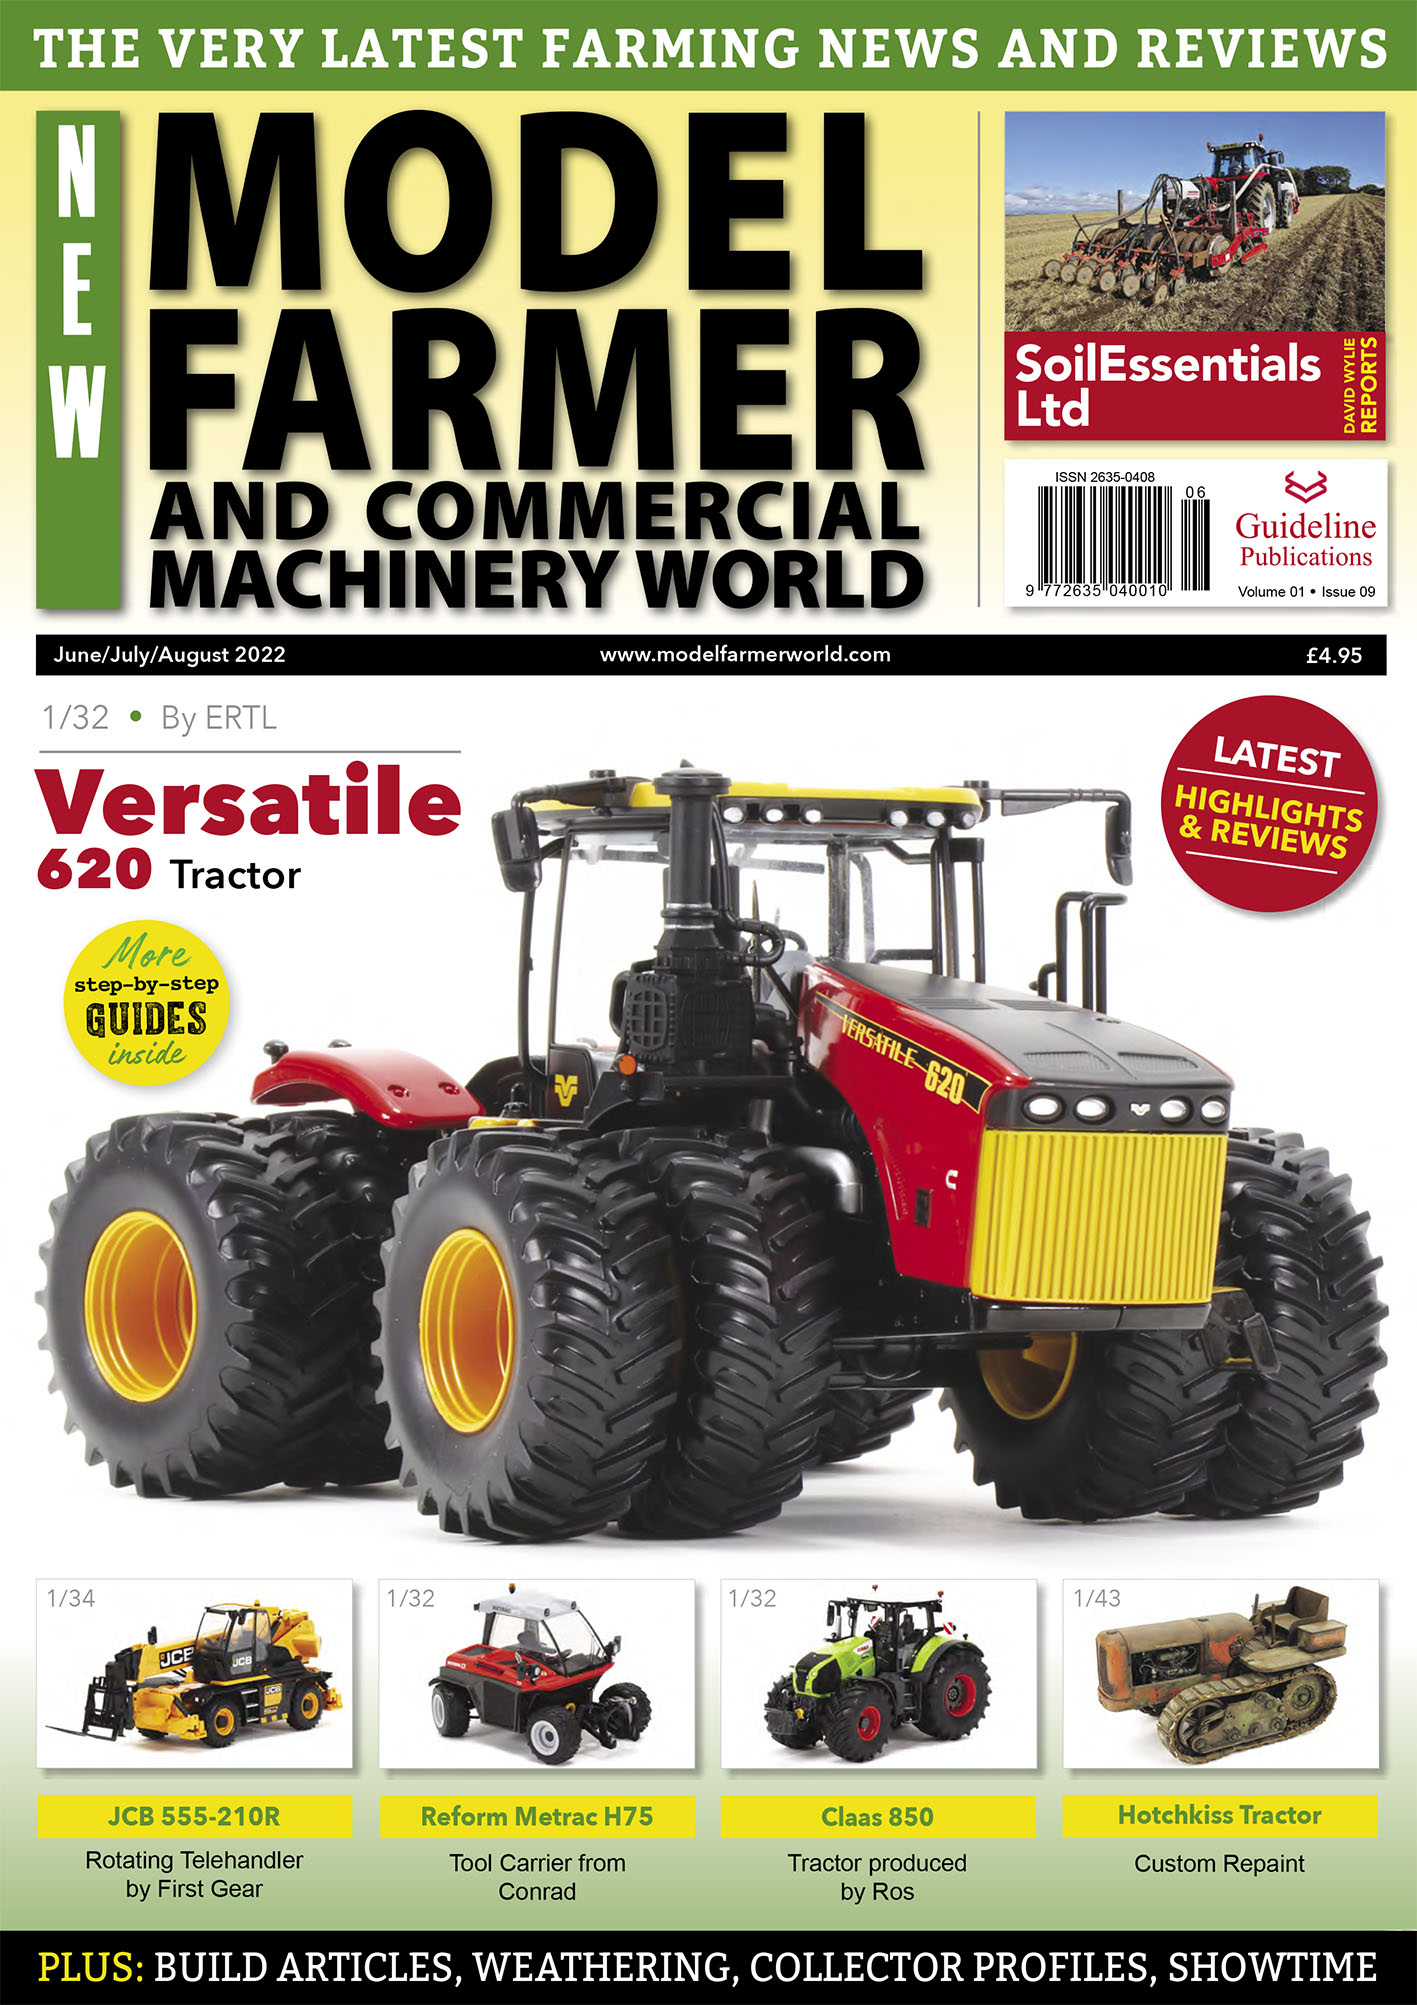 Guideline Publications Ltd New Model Farmer  Issue 09 Editor Steven Downs 